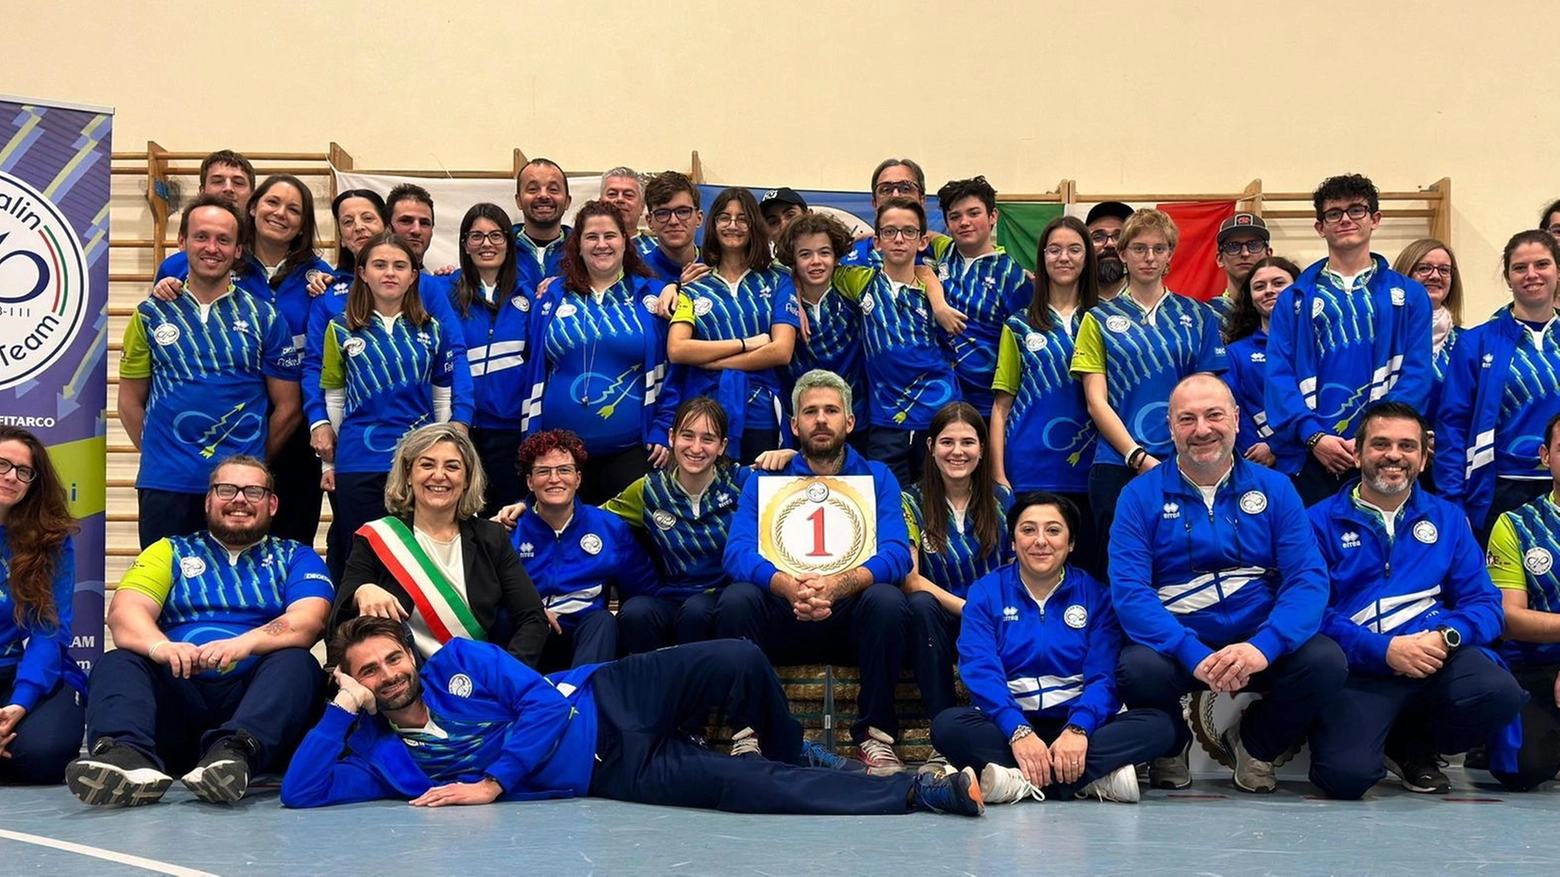 Tiro con l’arco A Villa Spalletti il 25 aprile i campionati italiani a squadre. Organizza il Malin team. Il ds Palazzi: "Schieriamo atleti di altissimo calibro".